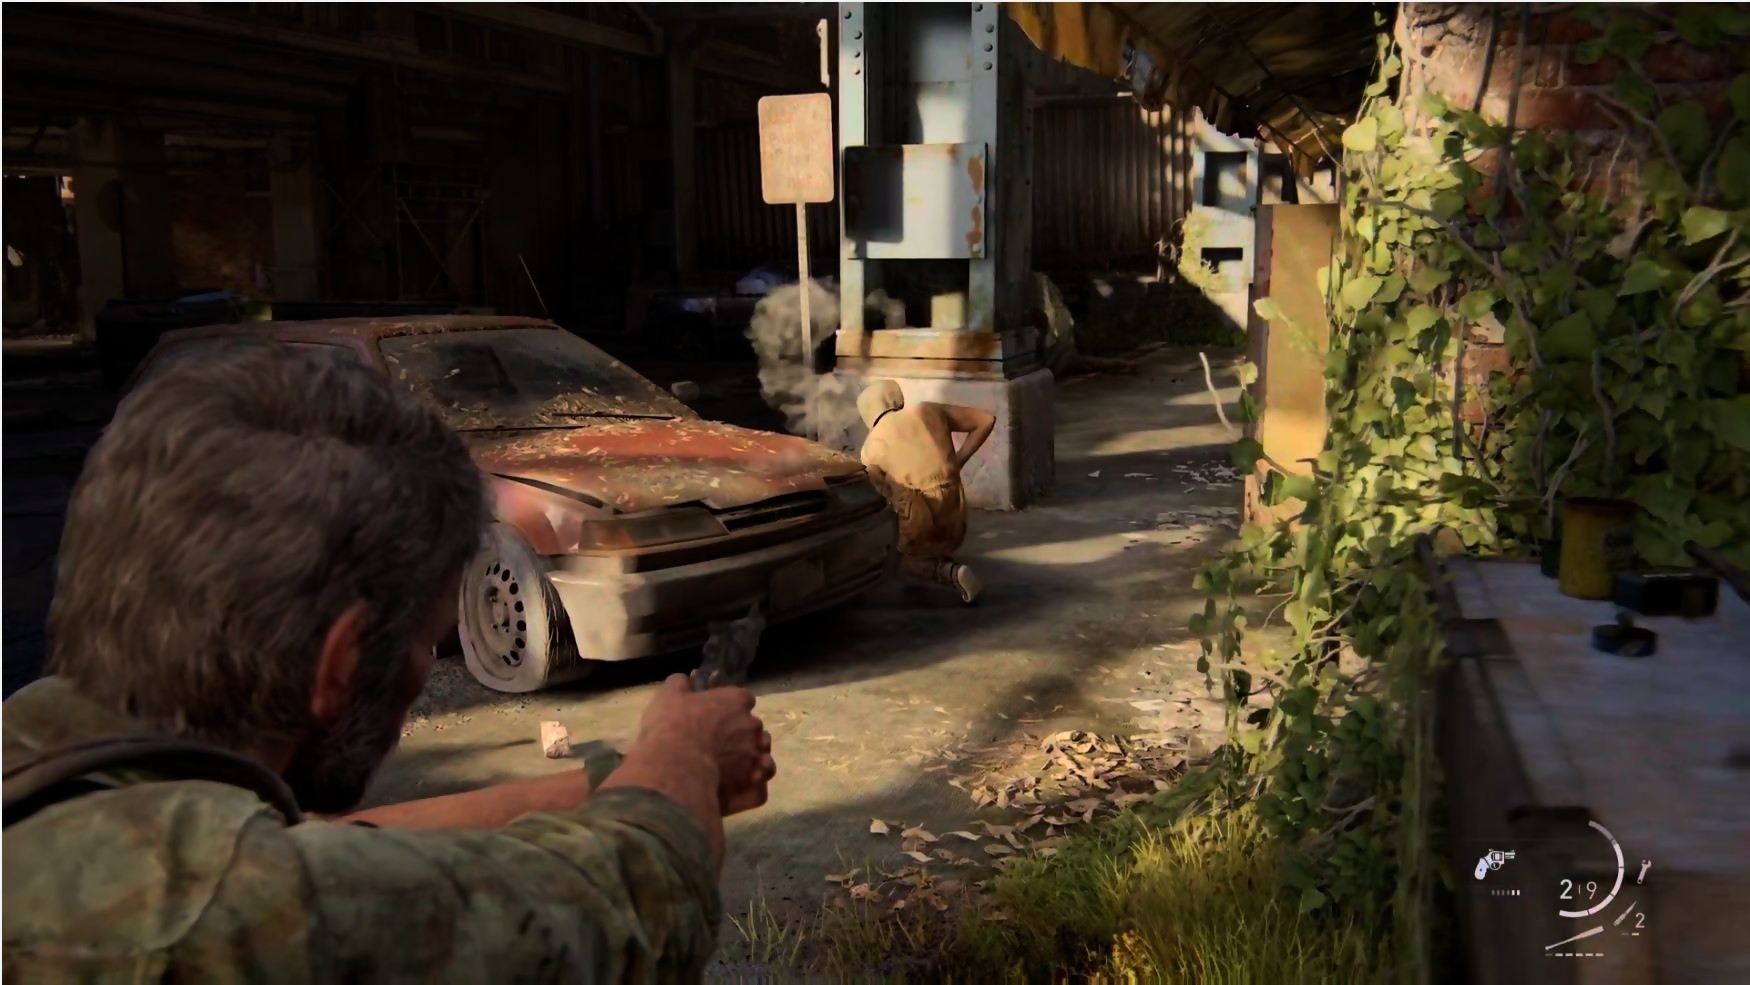 The Last of Us Part I : le portage PC est une catastrophe, voici les pires  bugs